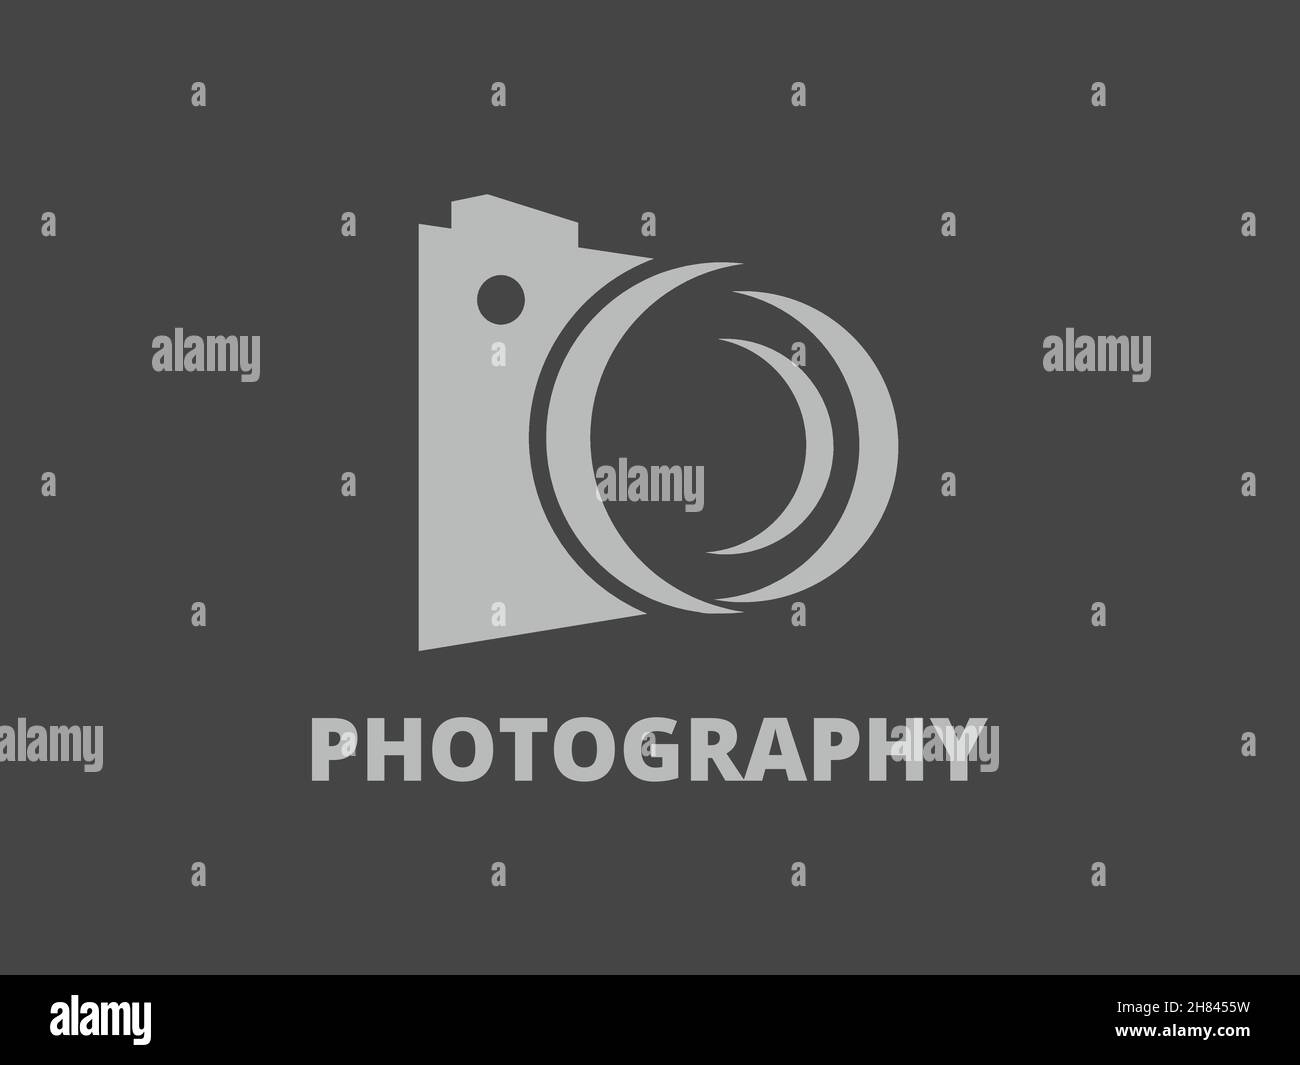 Moderne Einfache Fotografie Logo Stock Vektor